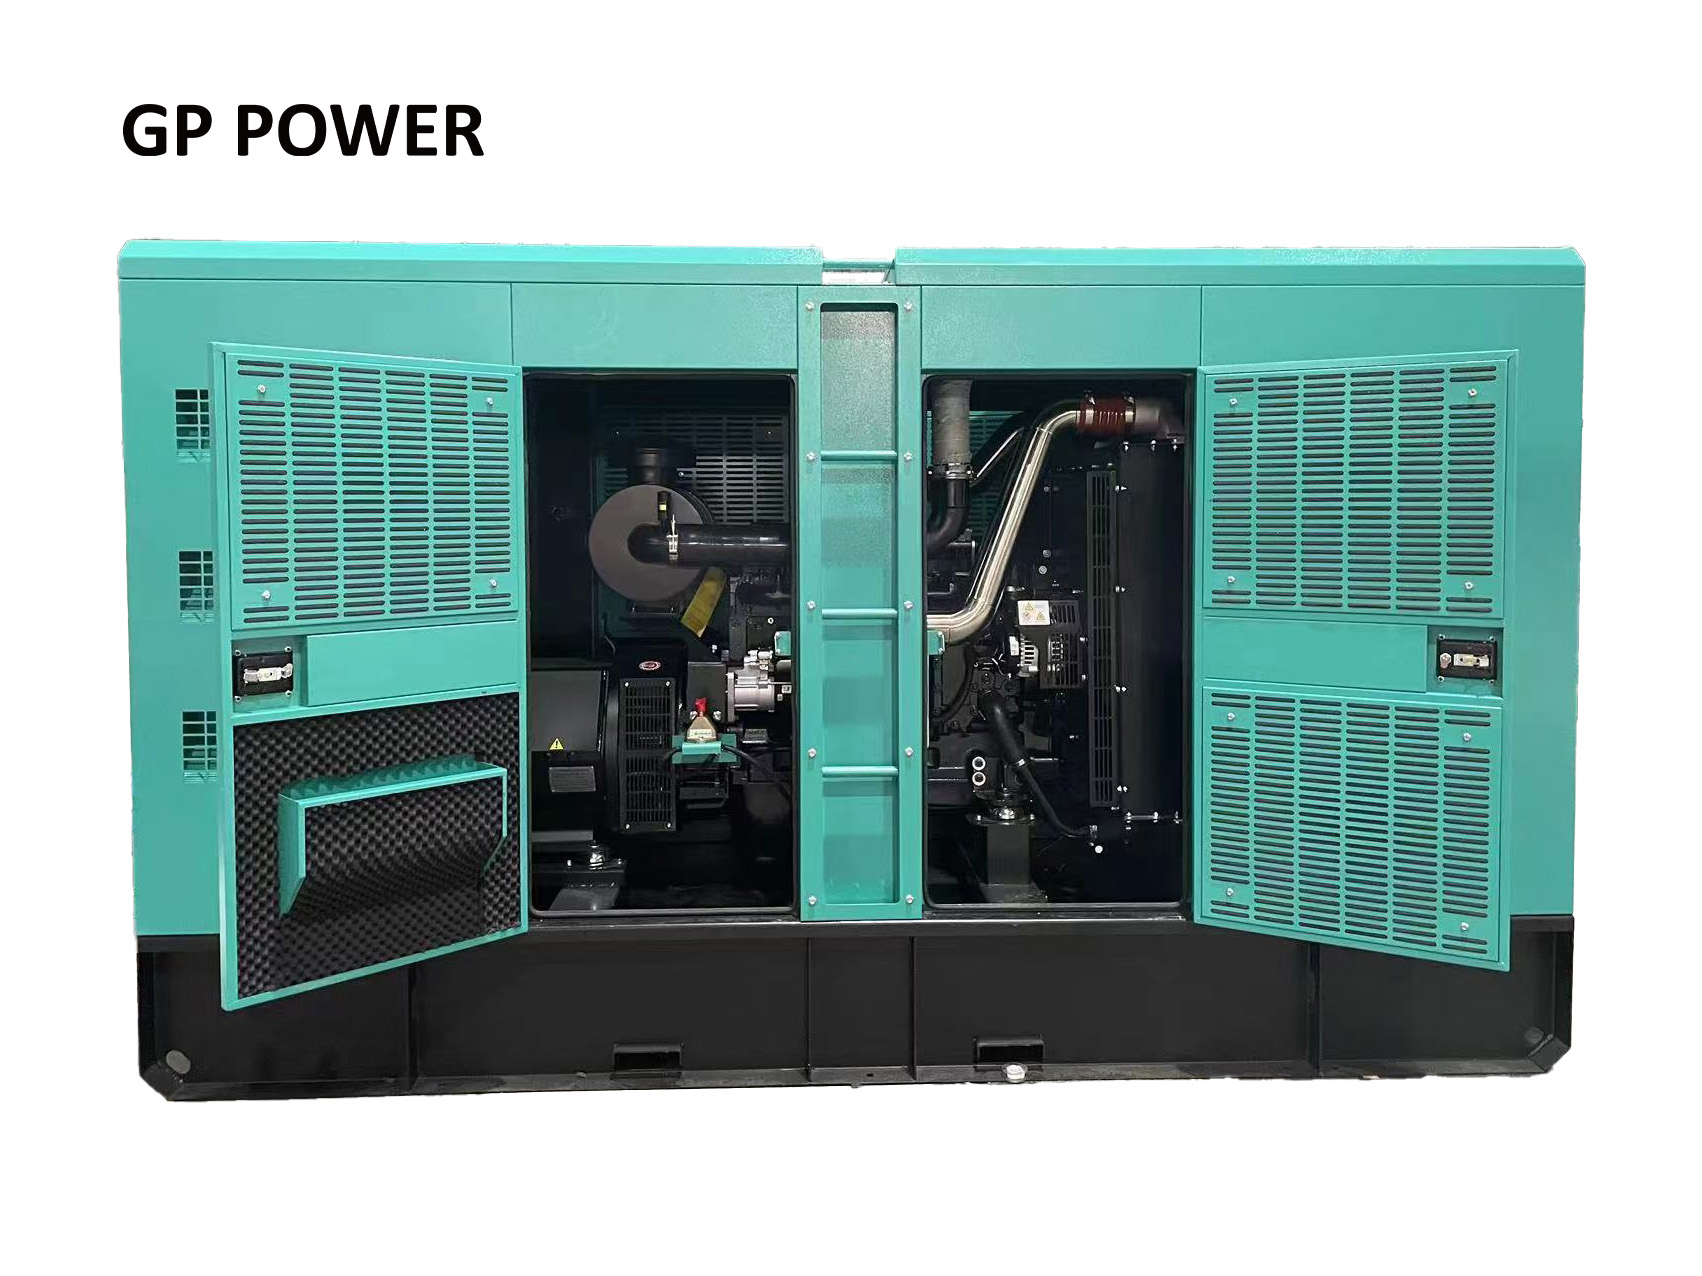 I-Diesel Generator Setha izimo zokusebenza